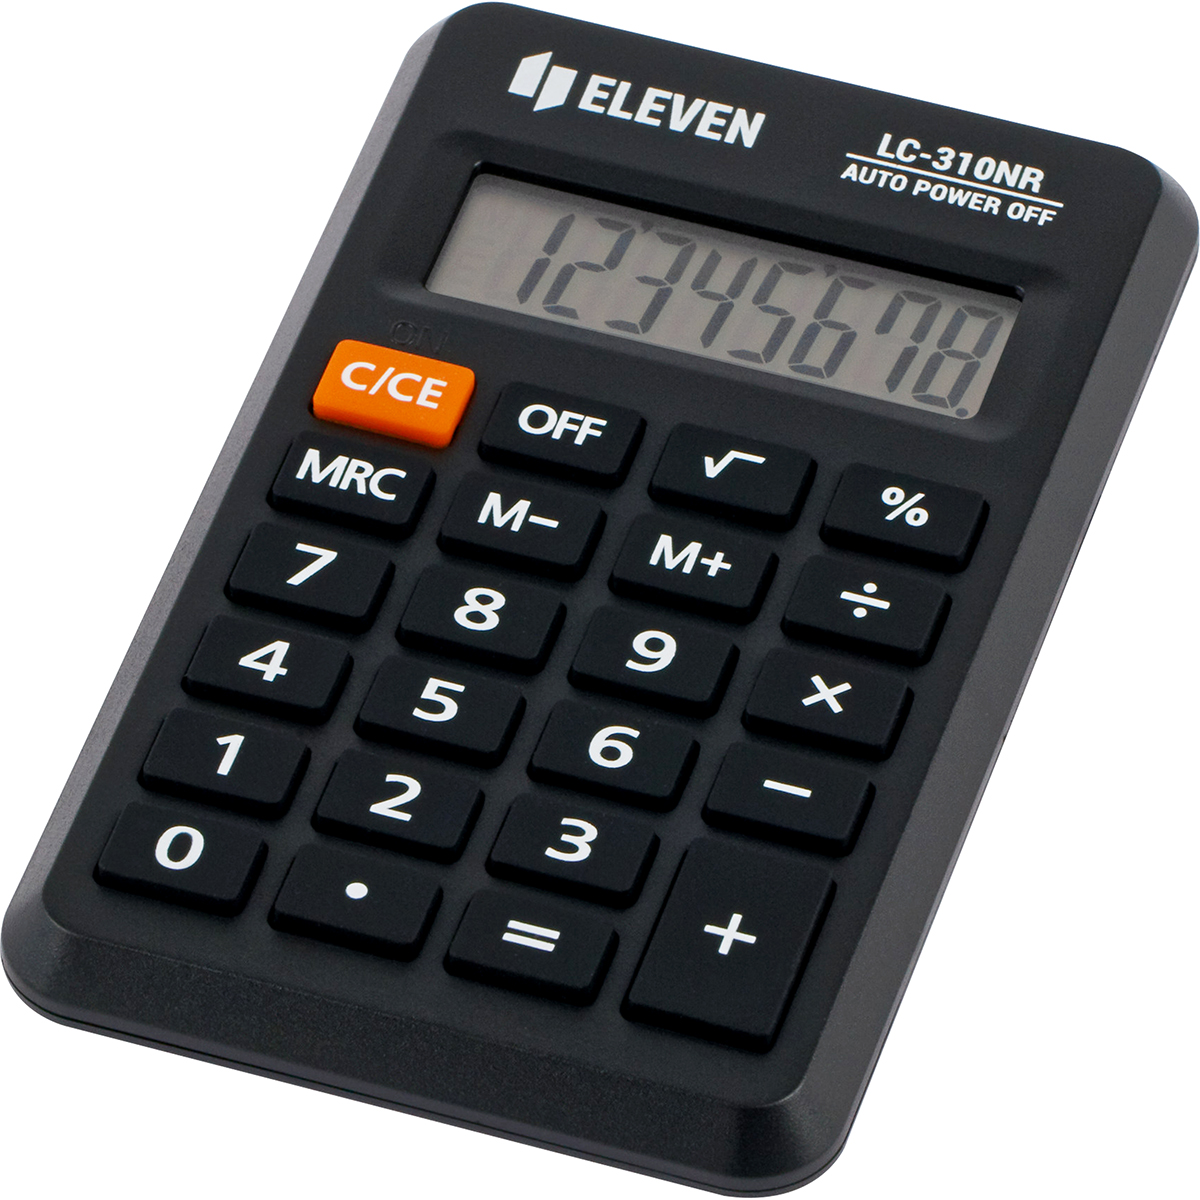 Калькулятор карманный Eleven LC-310NR, 8 разрядов, оптом